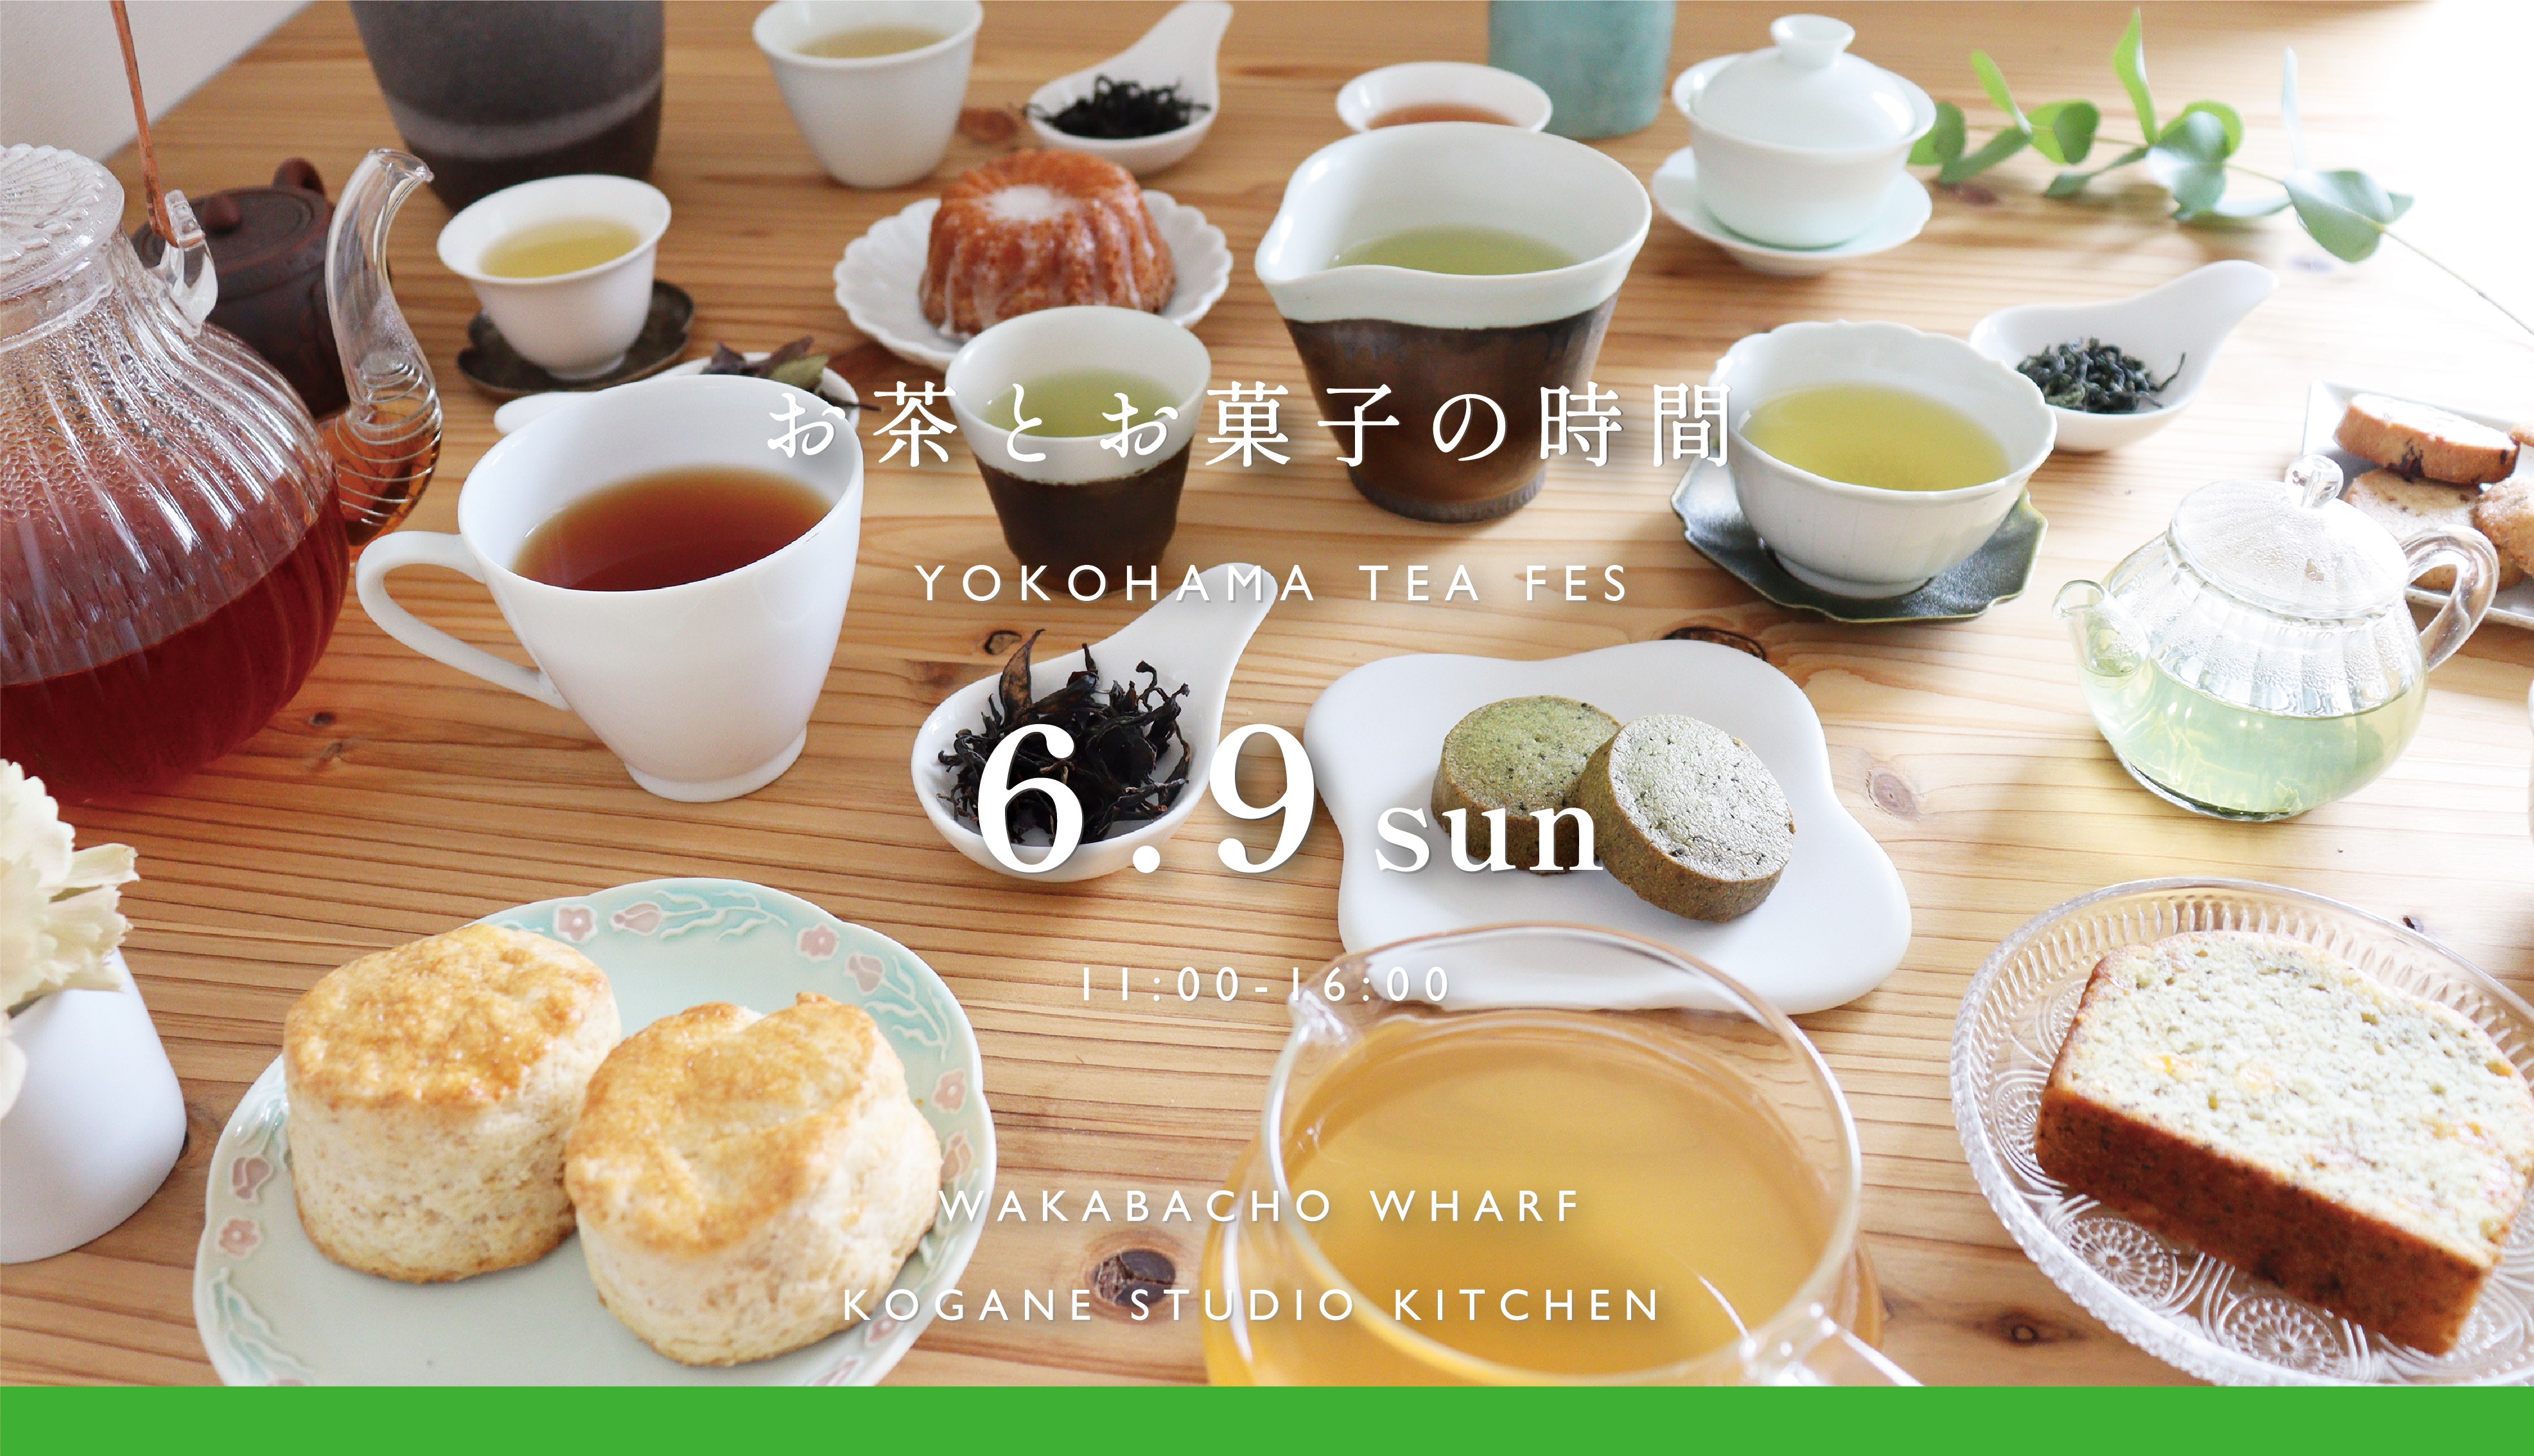 お茶とお菓子の時間 yokohama tea fes